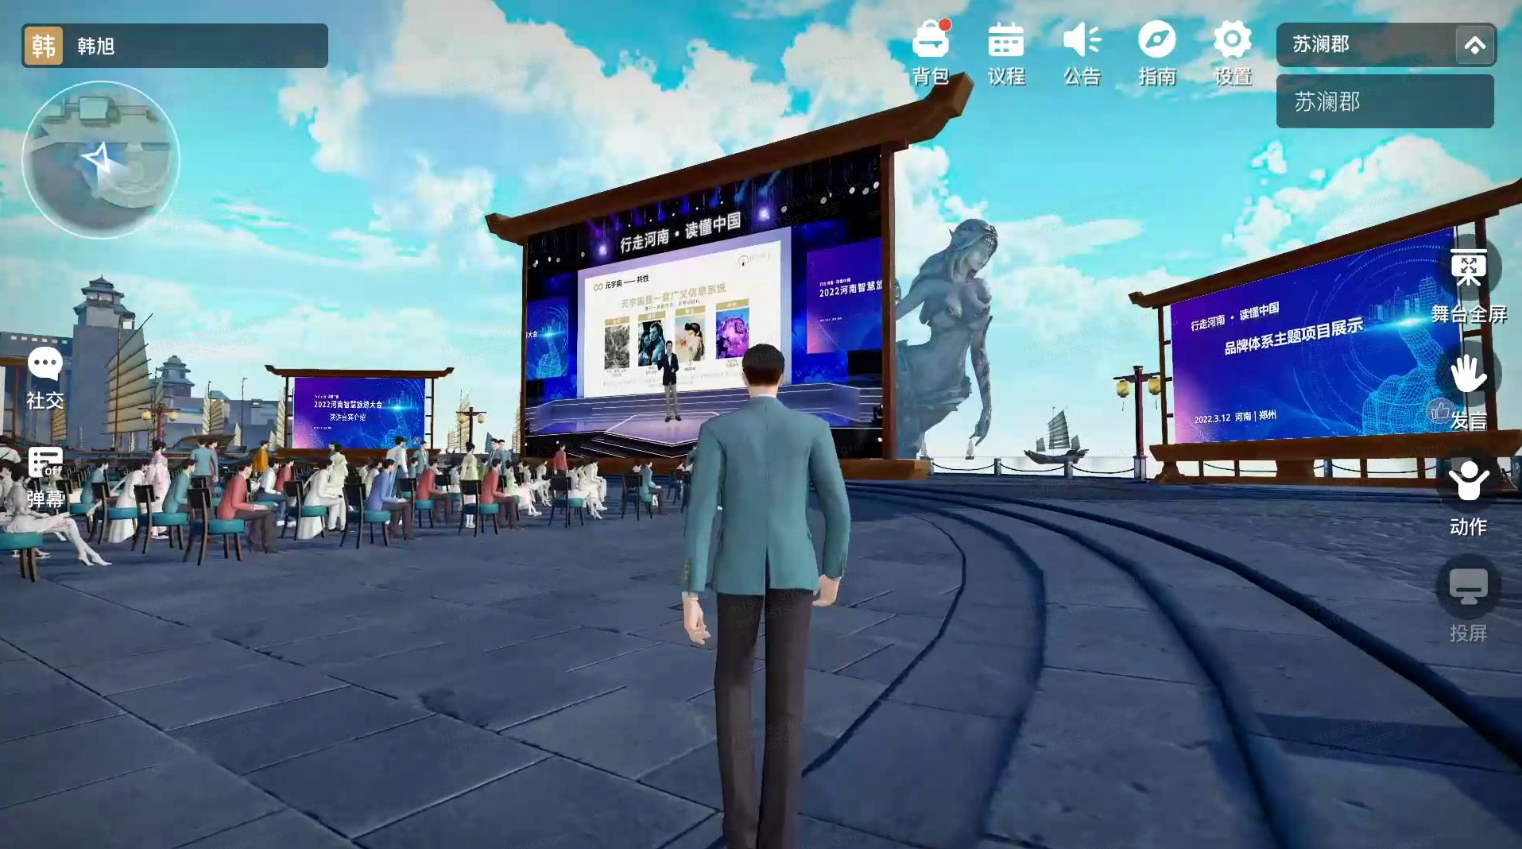 这是一张游戏内截图，显示一个角色站在舞台前，舞台上有屏幕展示活动信息，旁边坐着一些观众，周围环境现代化。